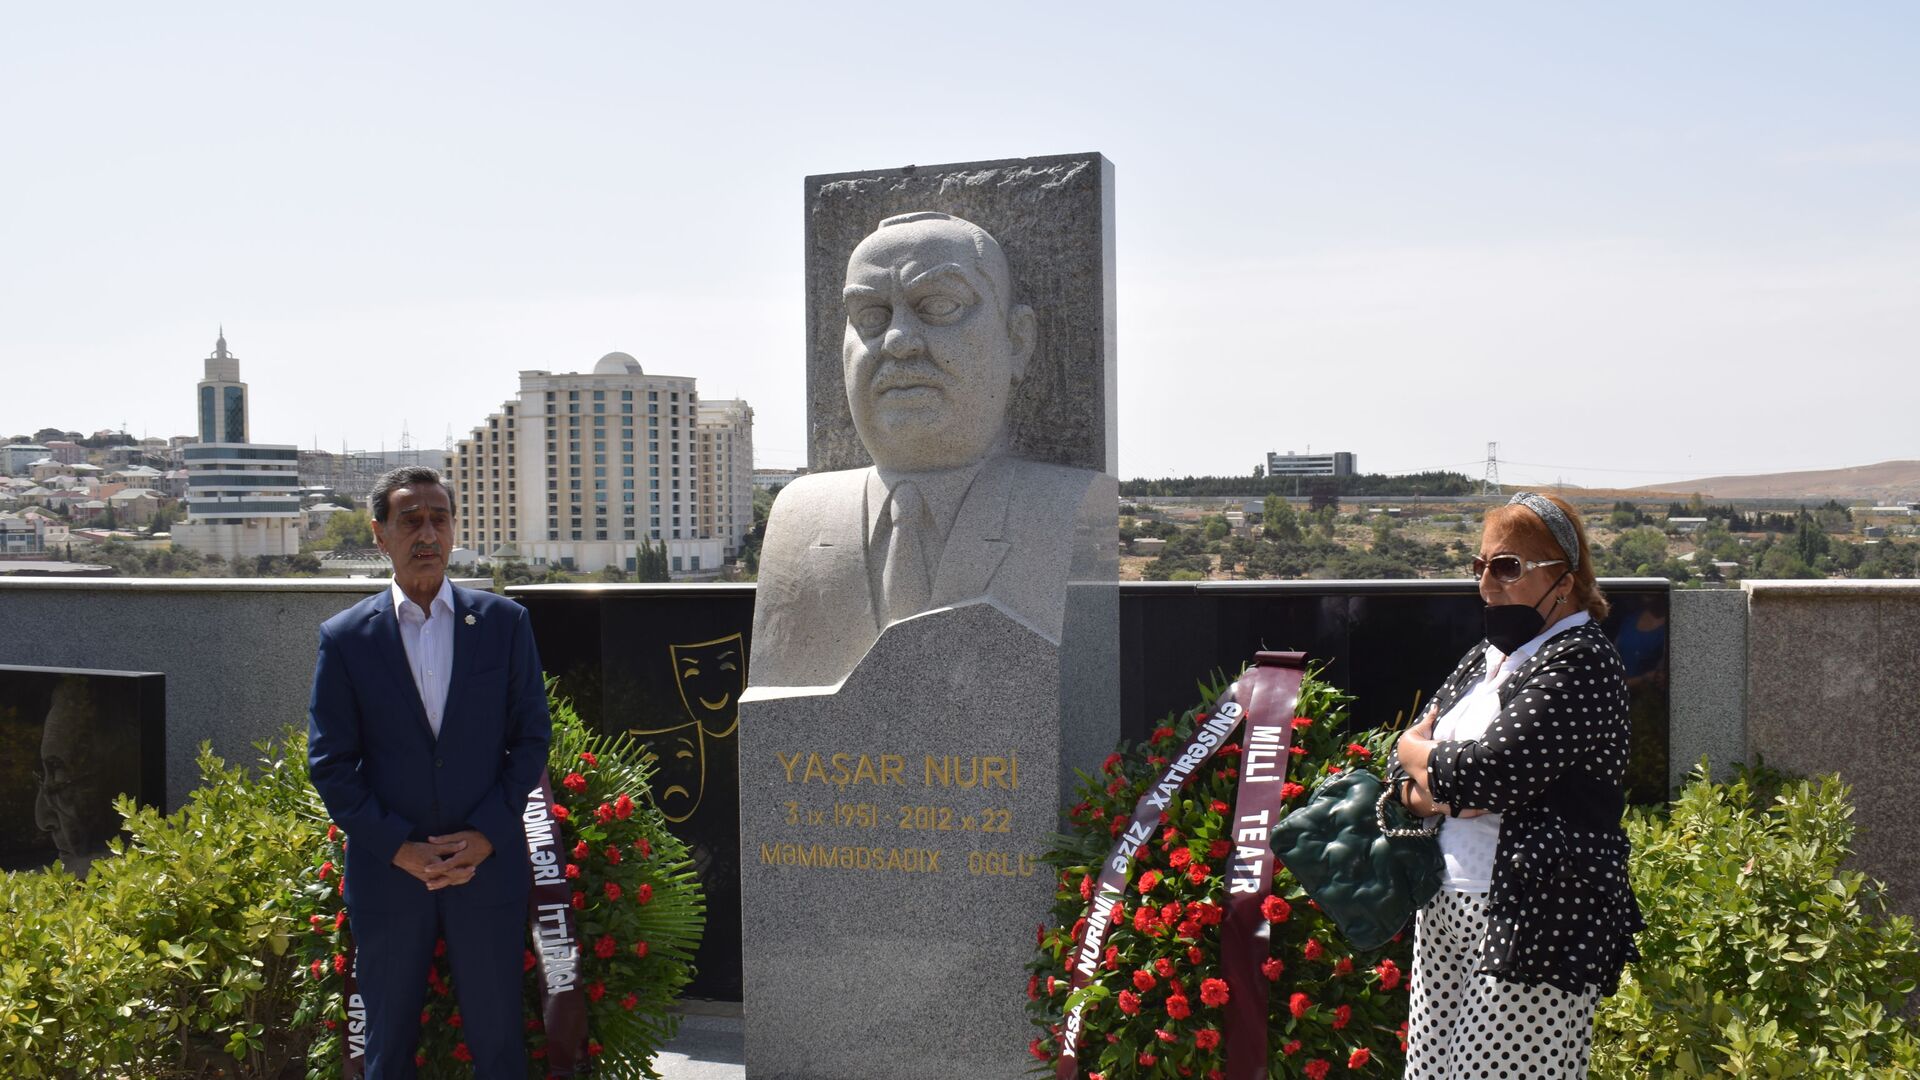 Мероприятие, посвященное памяти народного артиста Яшара Нури  - Sputnik Азербайджан, 1920, 06.09.2021